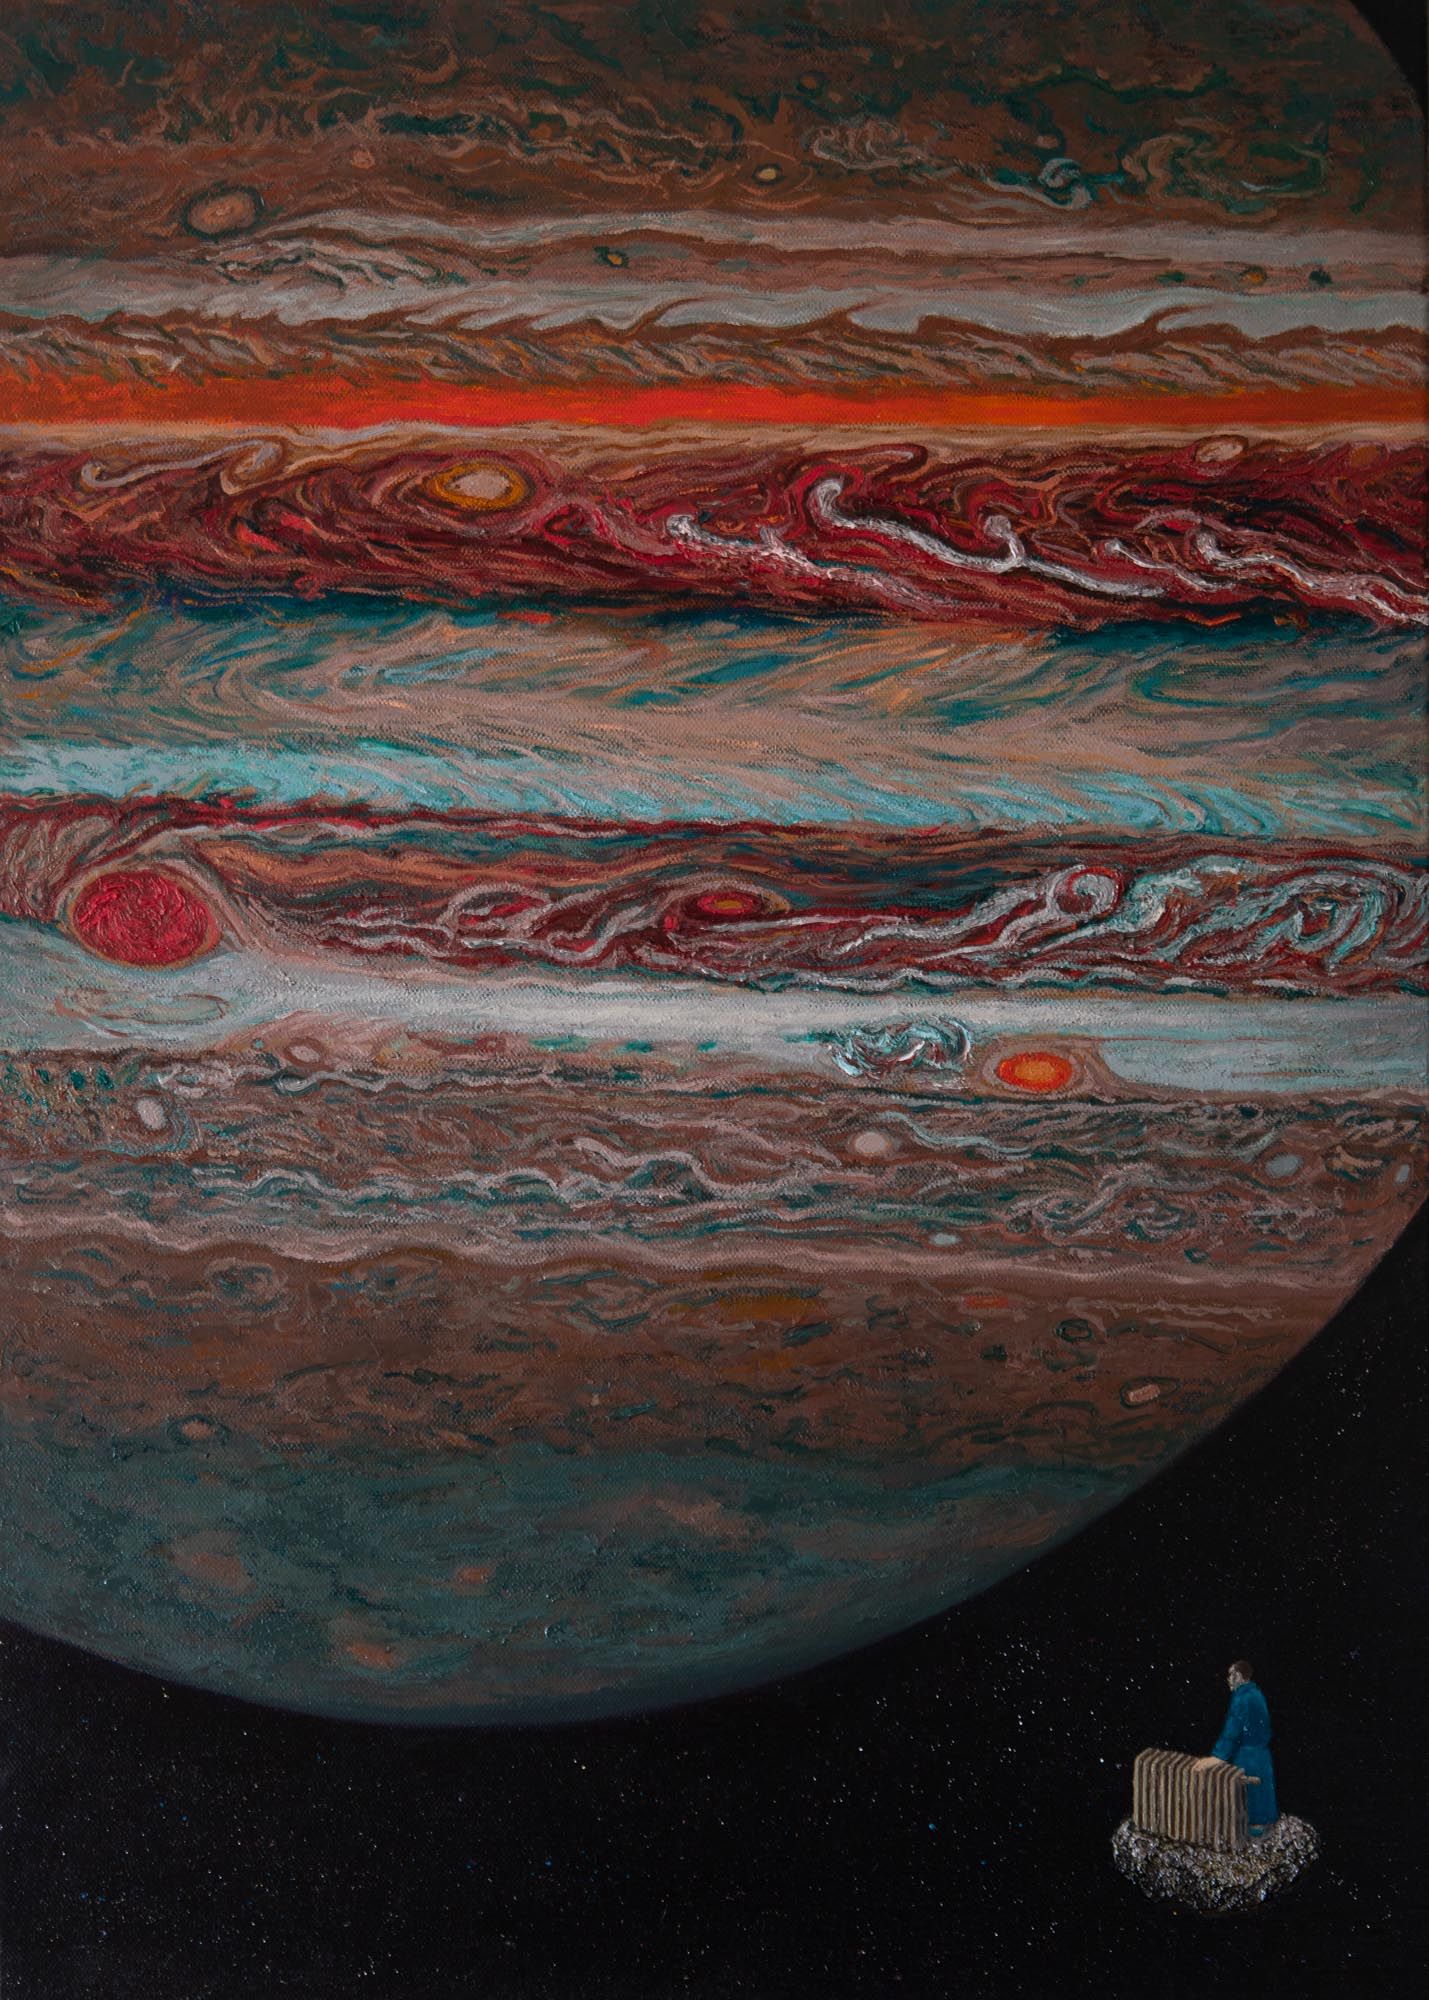 Space Tourism: Jupiter